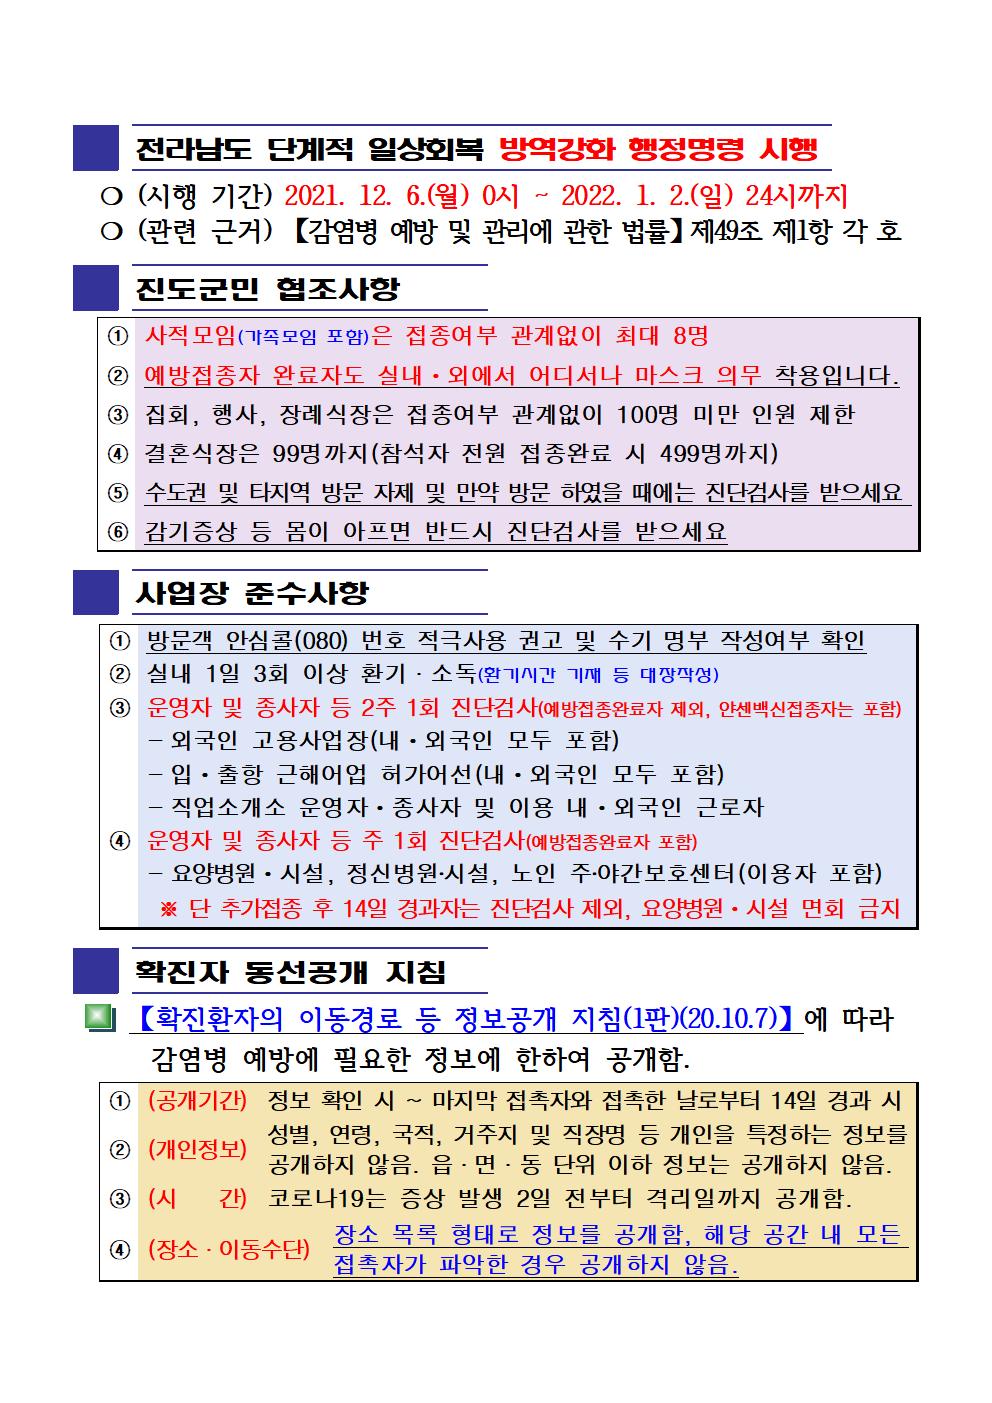 2021년 코로나 19 대응 일일상황보고(12월 07일 24시 기준) 첨부#2